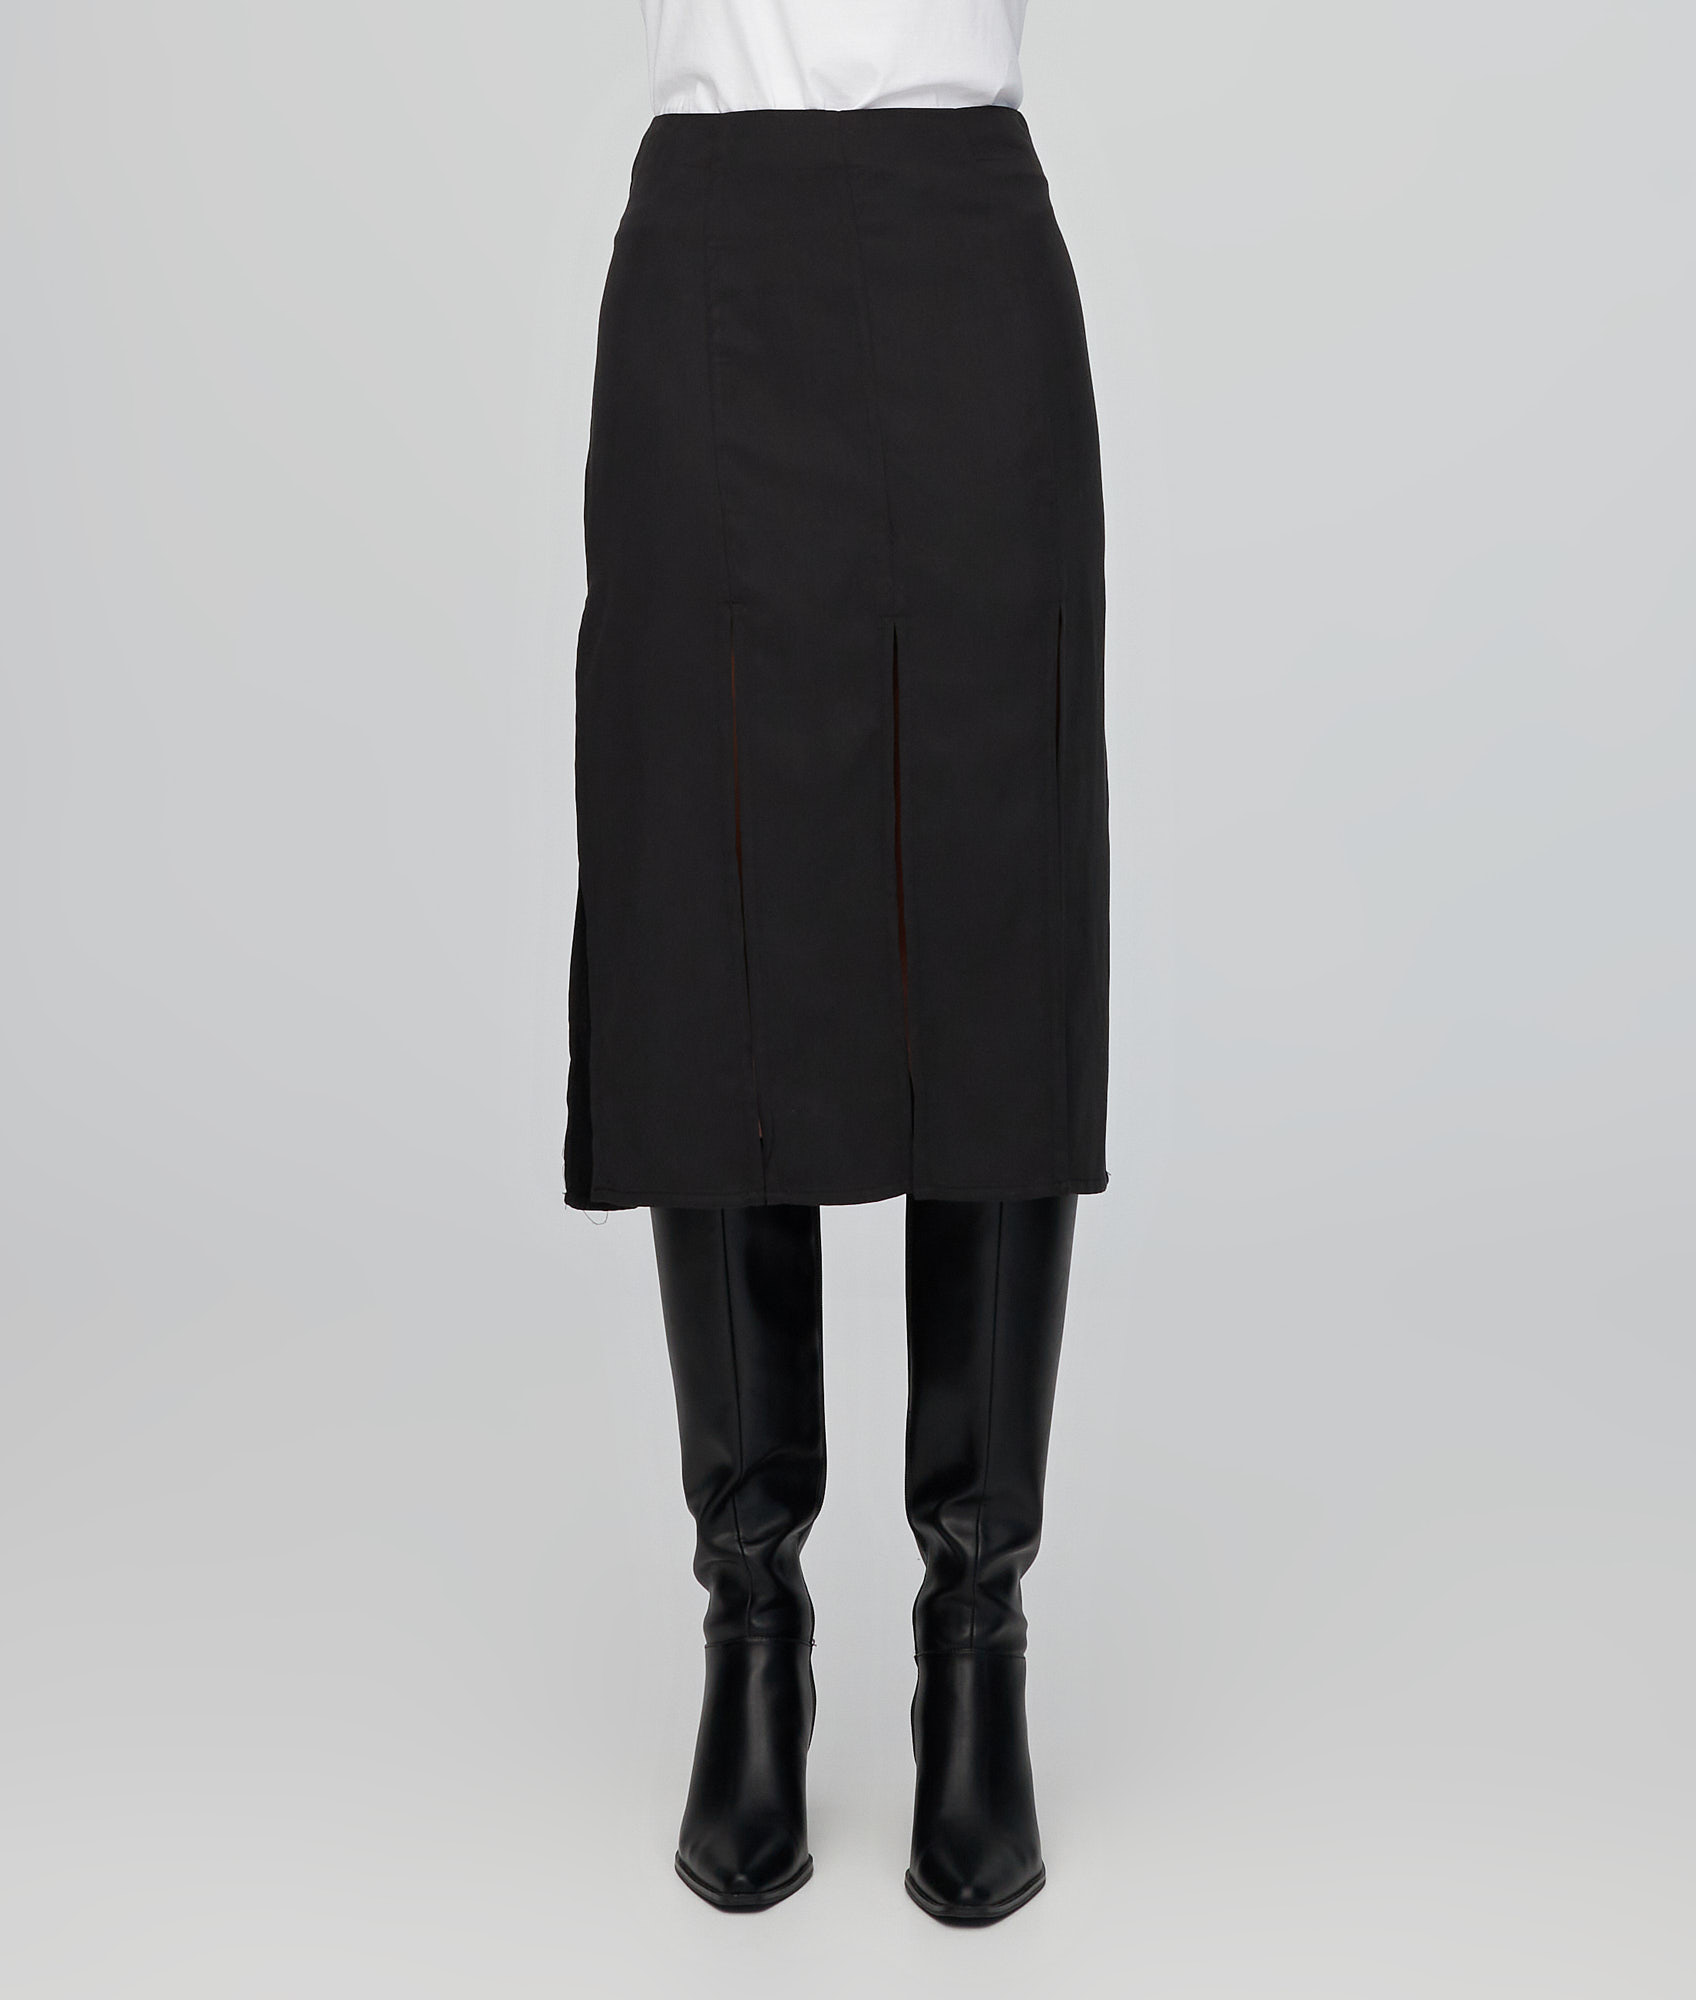 Chloe Black Skirt